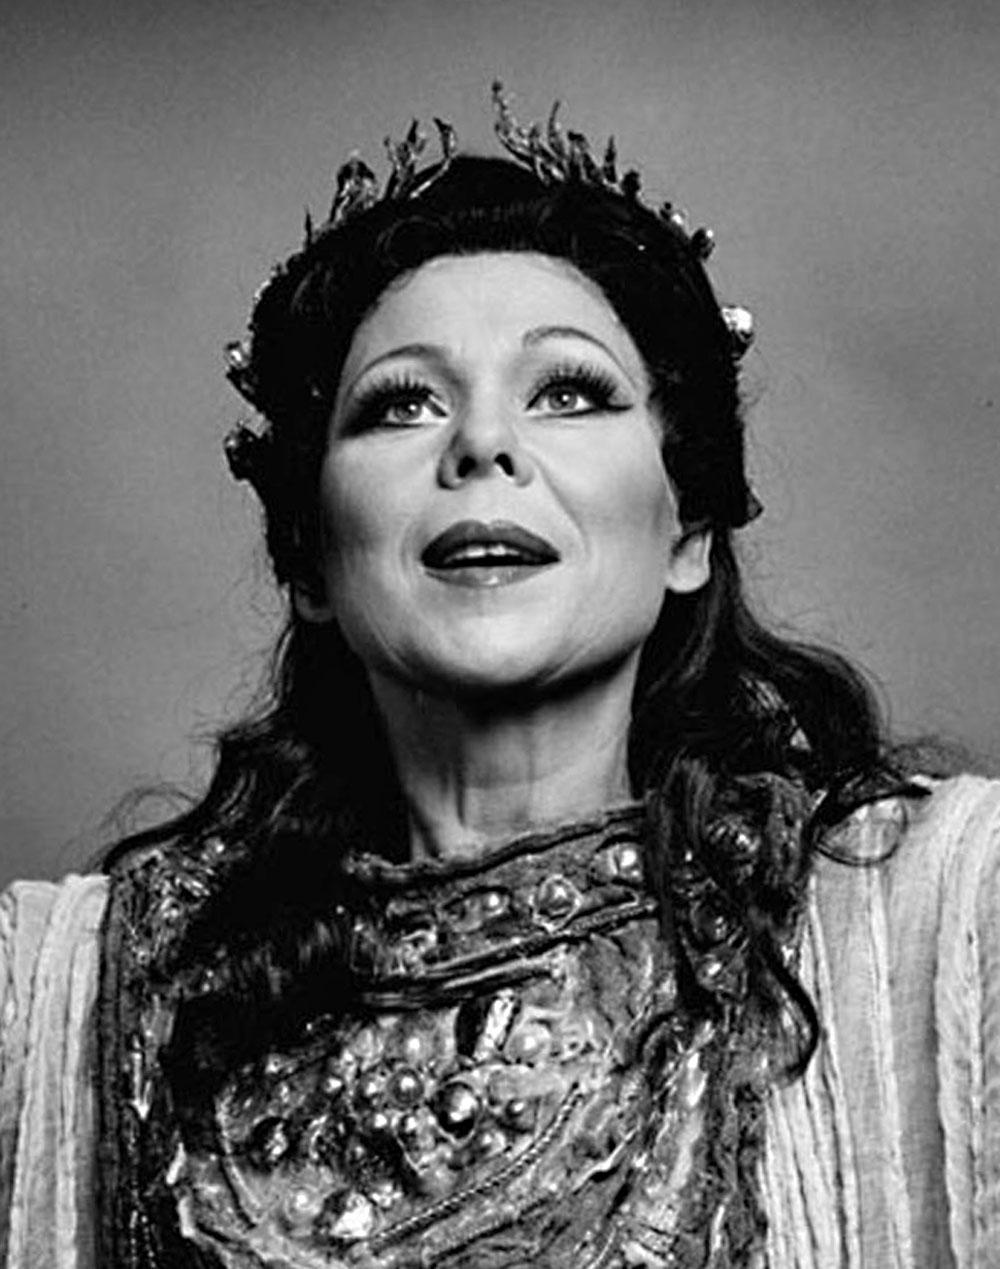  Metropolitan Opera soprano Renata Scotto in 'Norma' - Photograph by Jack Mitchell